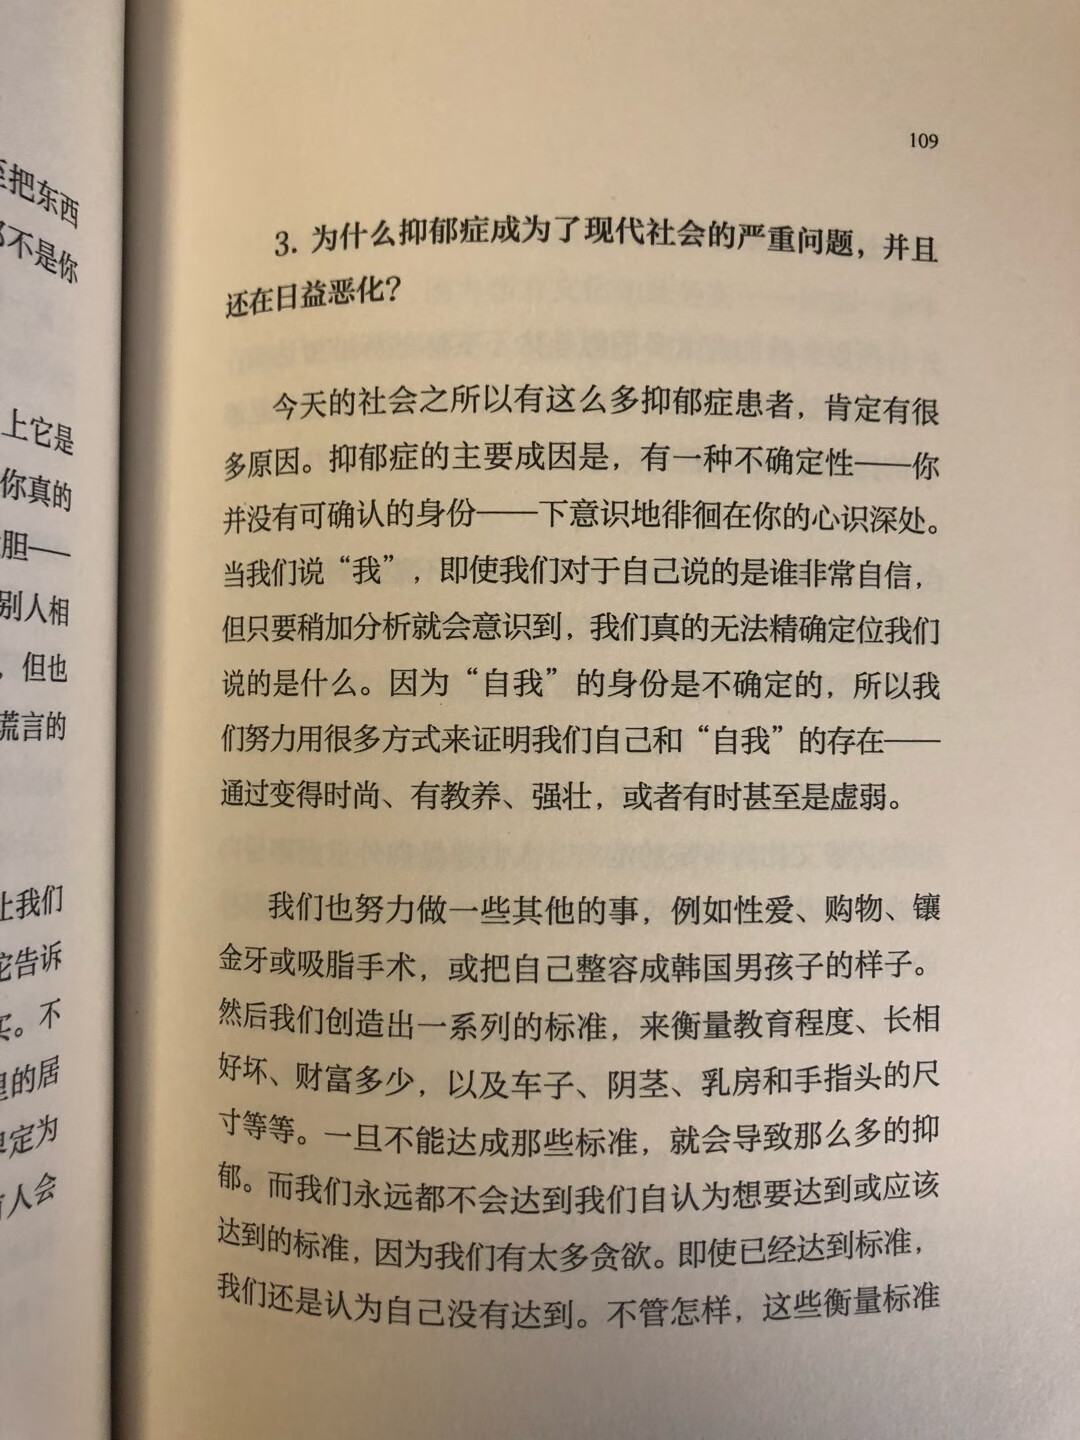 怎么感觉这本书是为中国人写的呢？或者就是序言是。相较其他佛法的书籍，这本里面的问题要更贴近现实生活和疑问些，能了解一些基本的也是很好的。学佛信佛不要想着跟佛祖做交易。